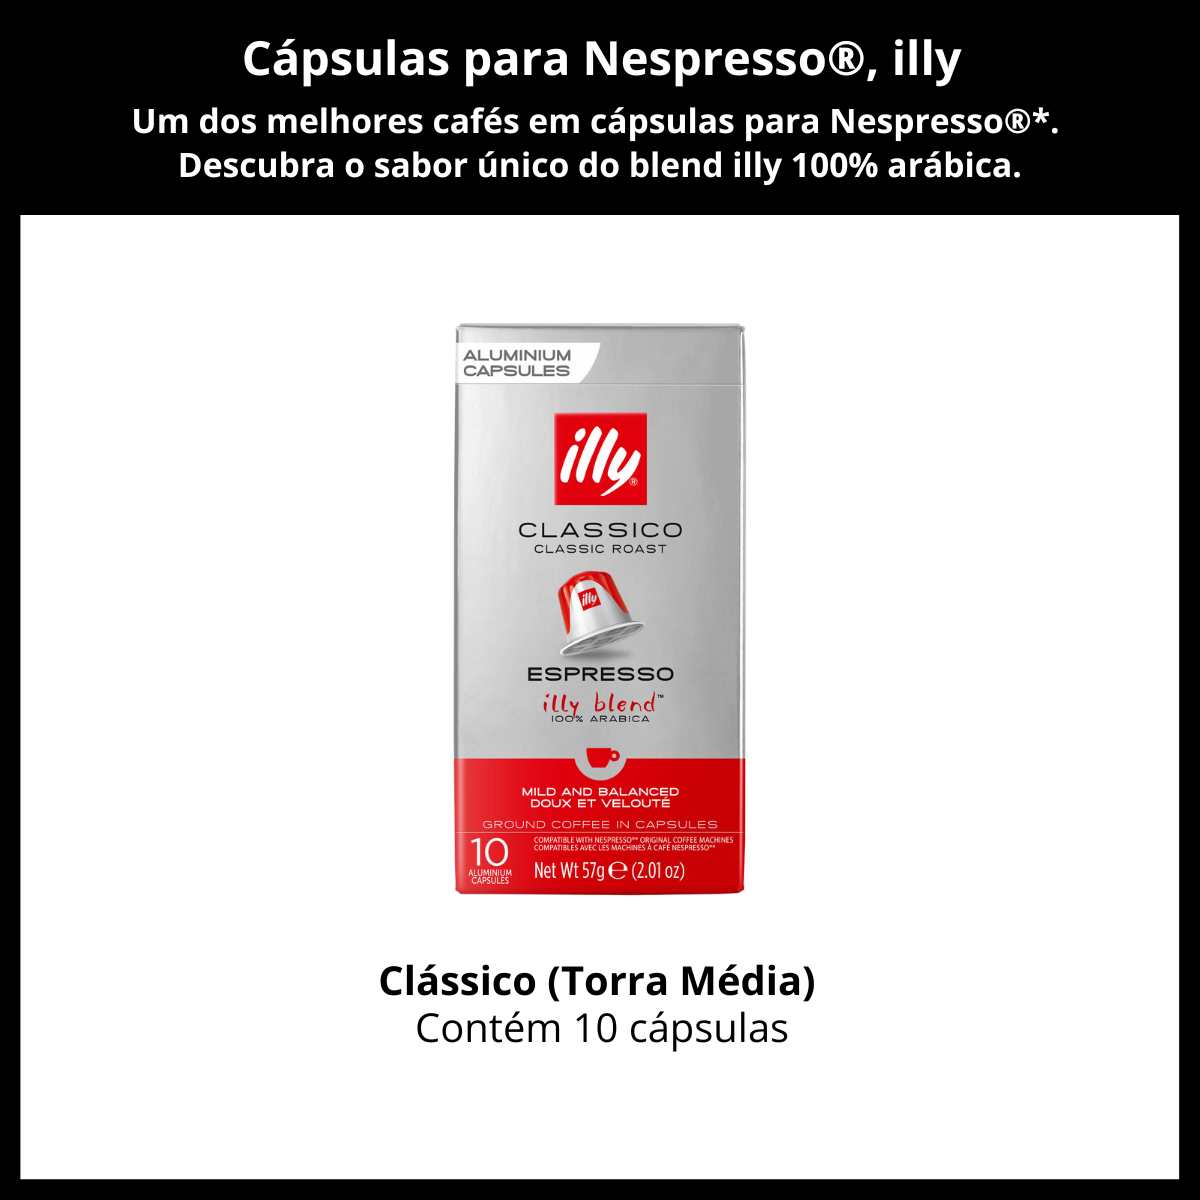 Cápsulas para Nespresso, Café Italiano Illy, Clássico